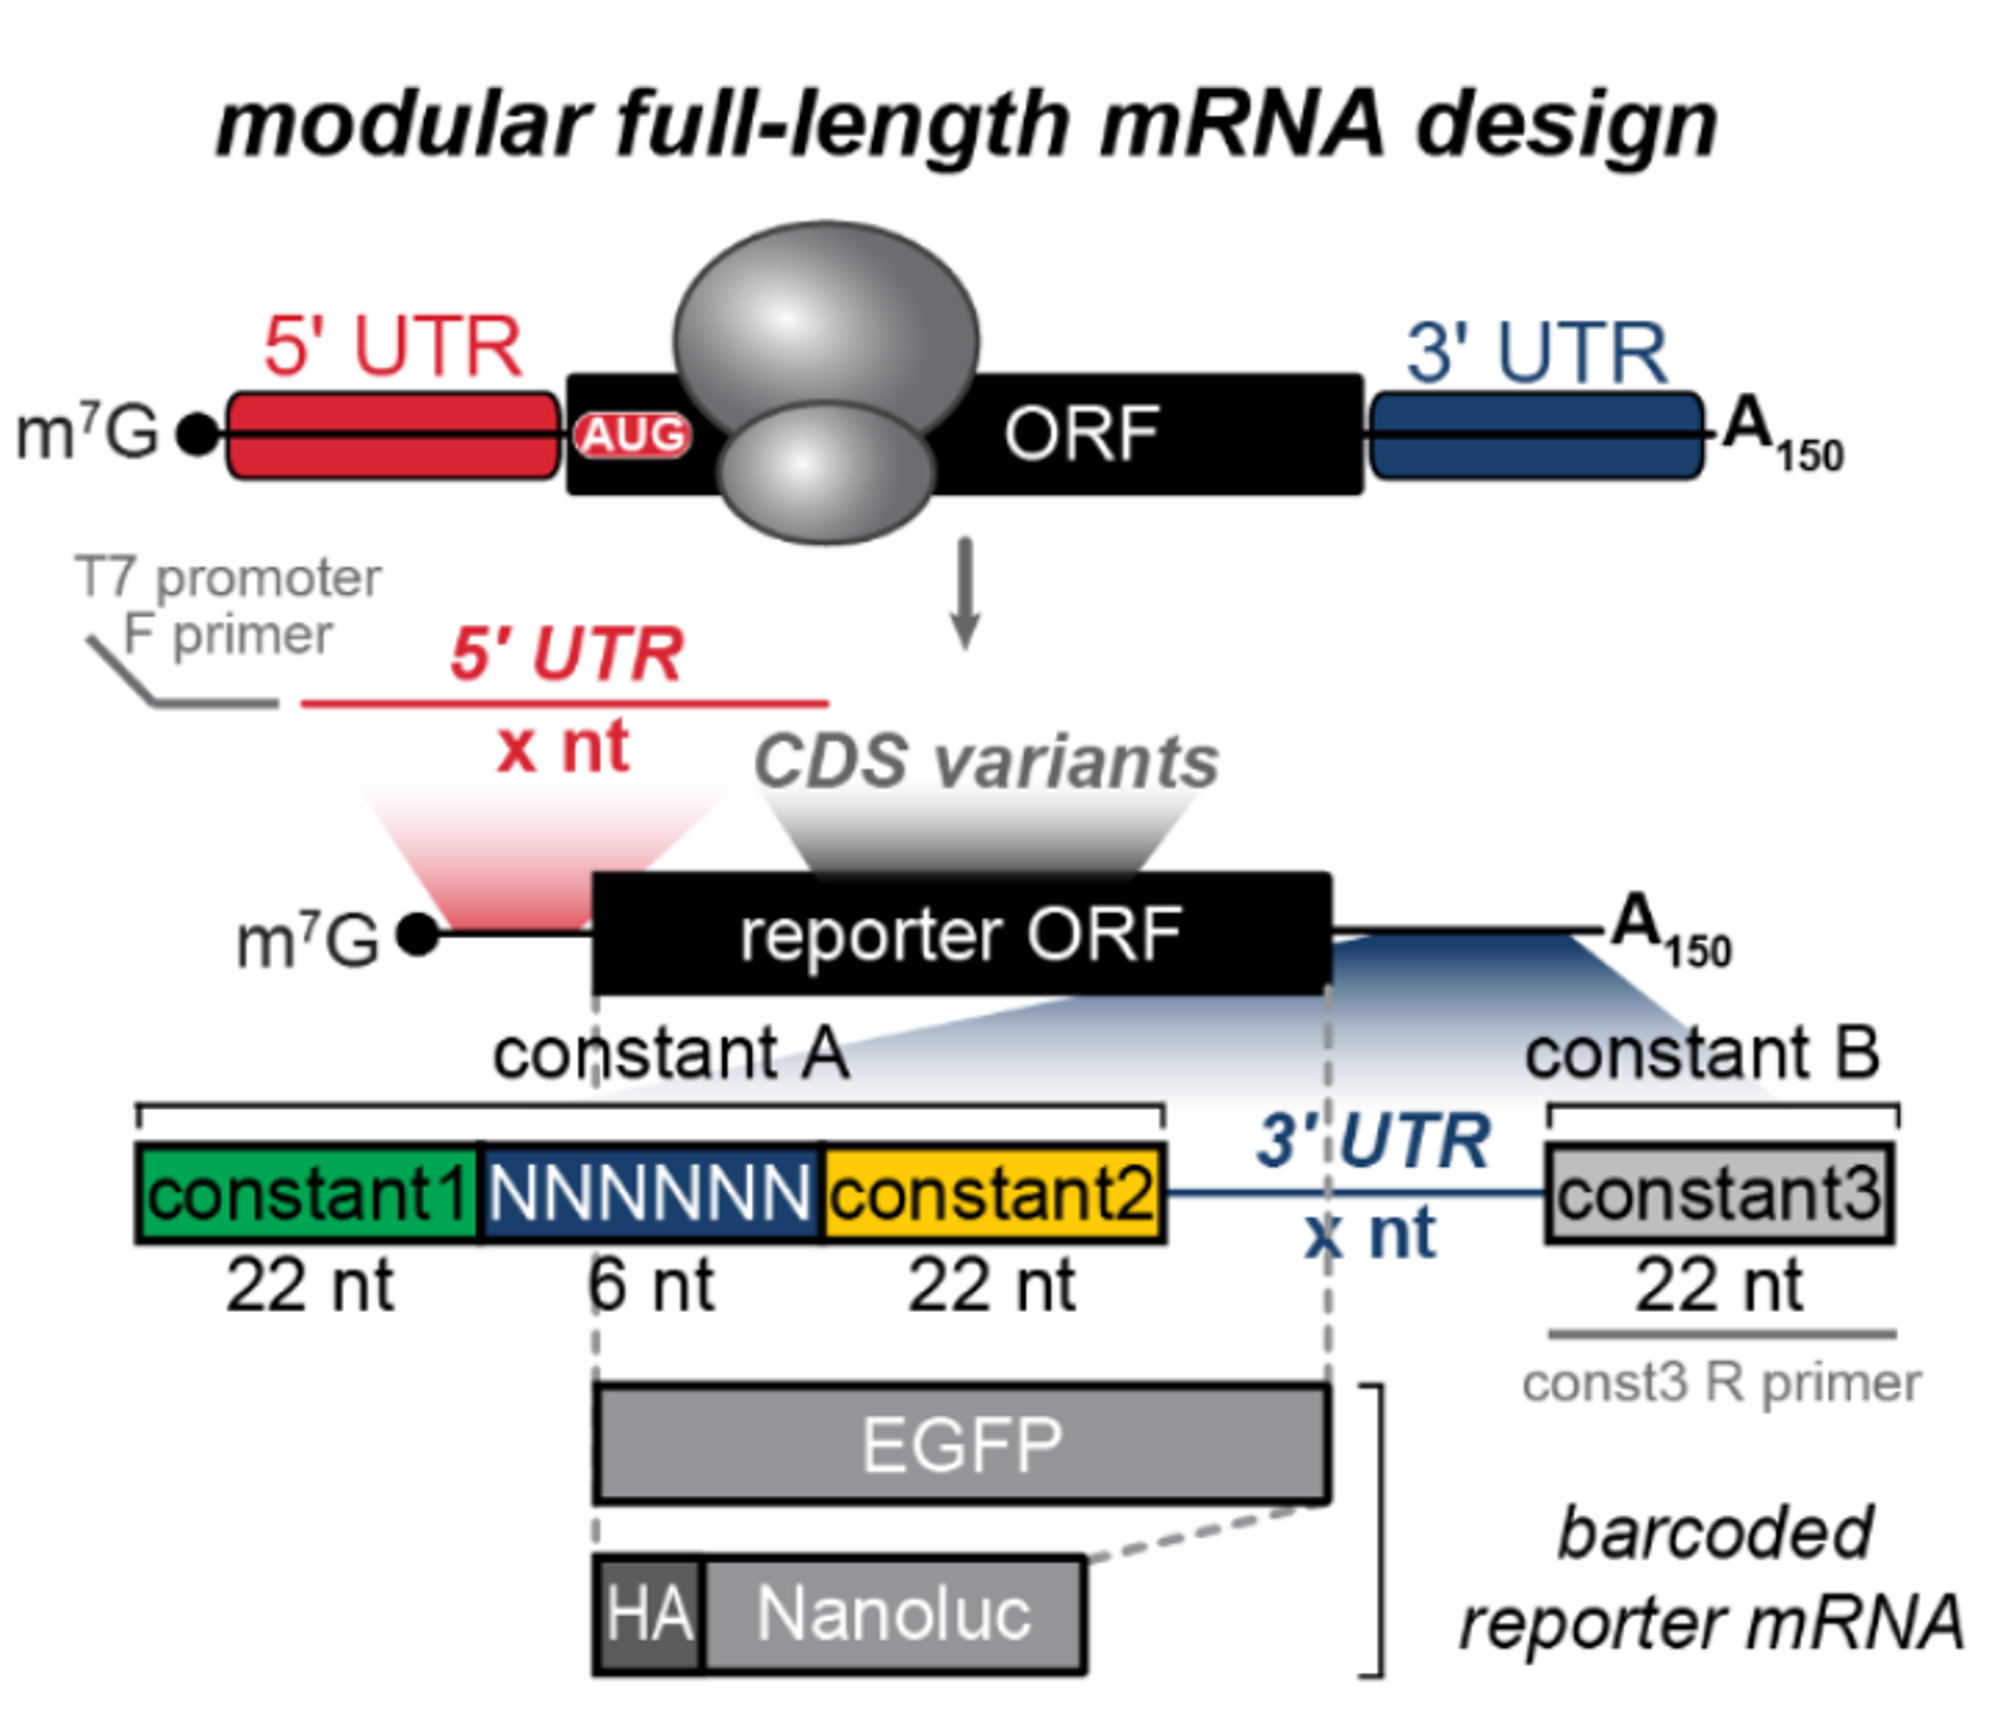 构建可以高通量评估mRNA性能的携带3'UTR-barcoded mRNA Reporter